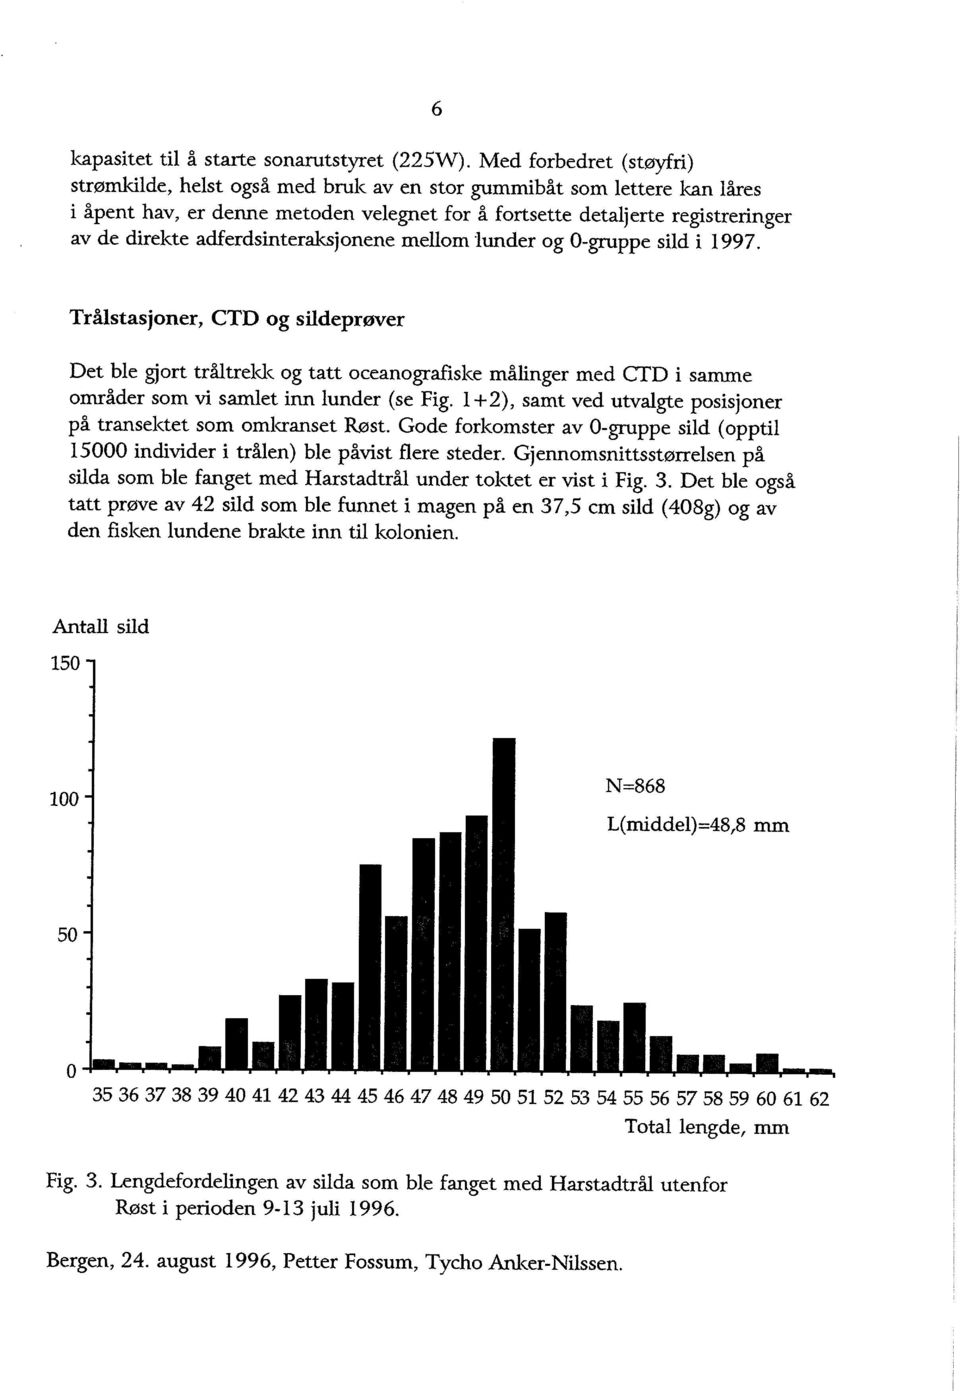 adferdsinteraksjonene mellom 'lunder og O-gruppe sild i 1997.